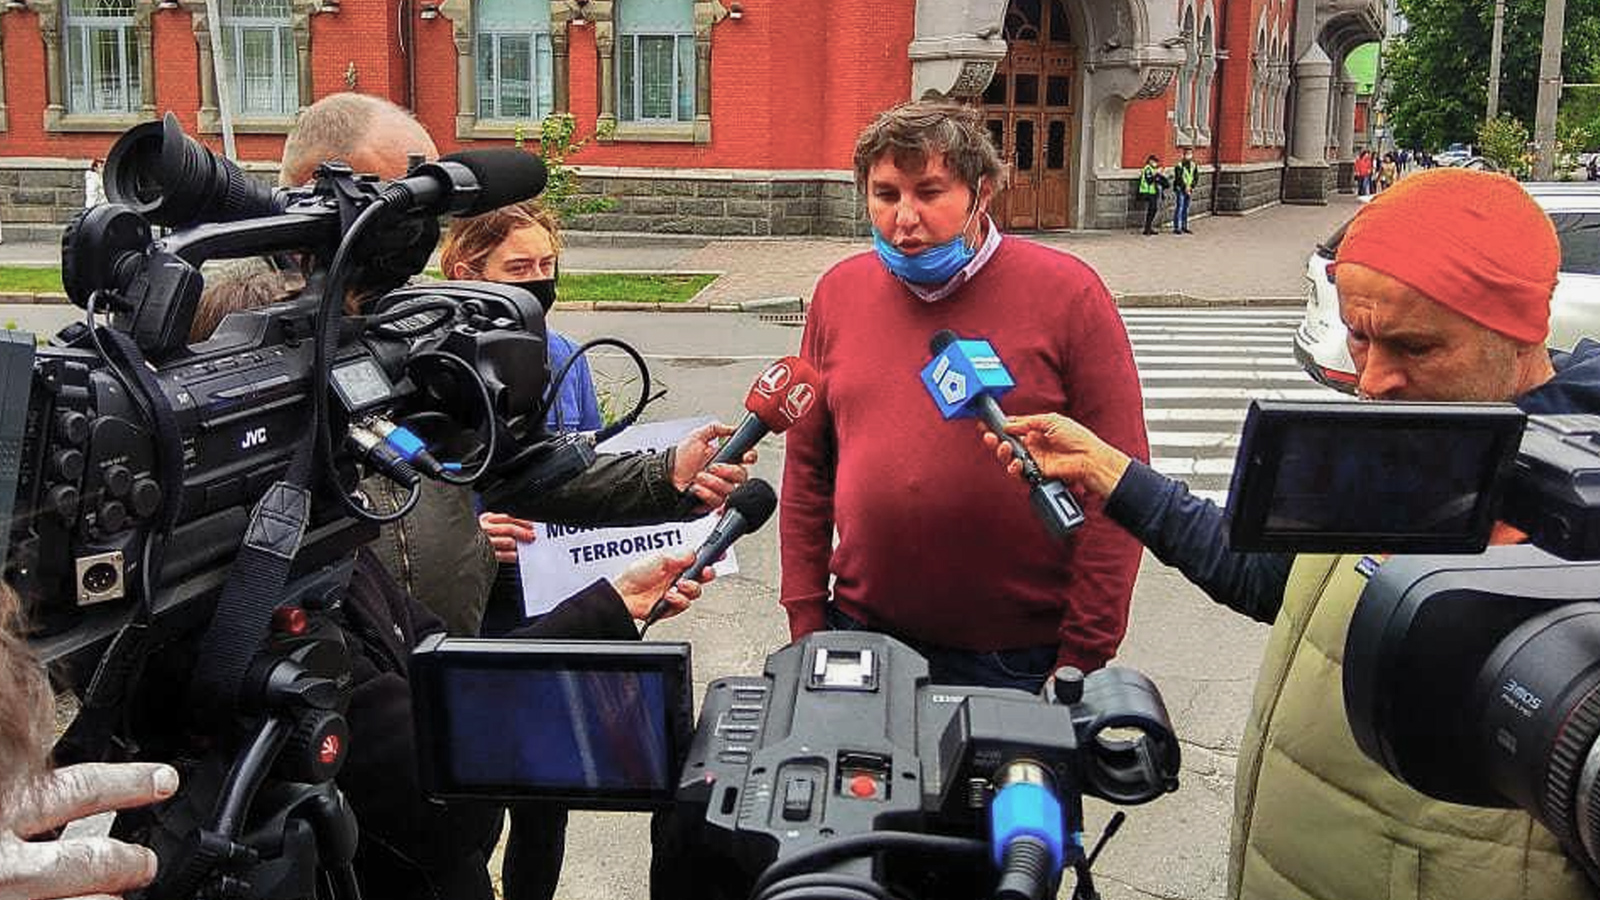 حقوقيون: الأمن الأوكراني لم يقدم أي أدلة على اتهامه معتز بالإرهاب (الجزيرة)